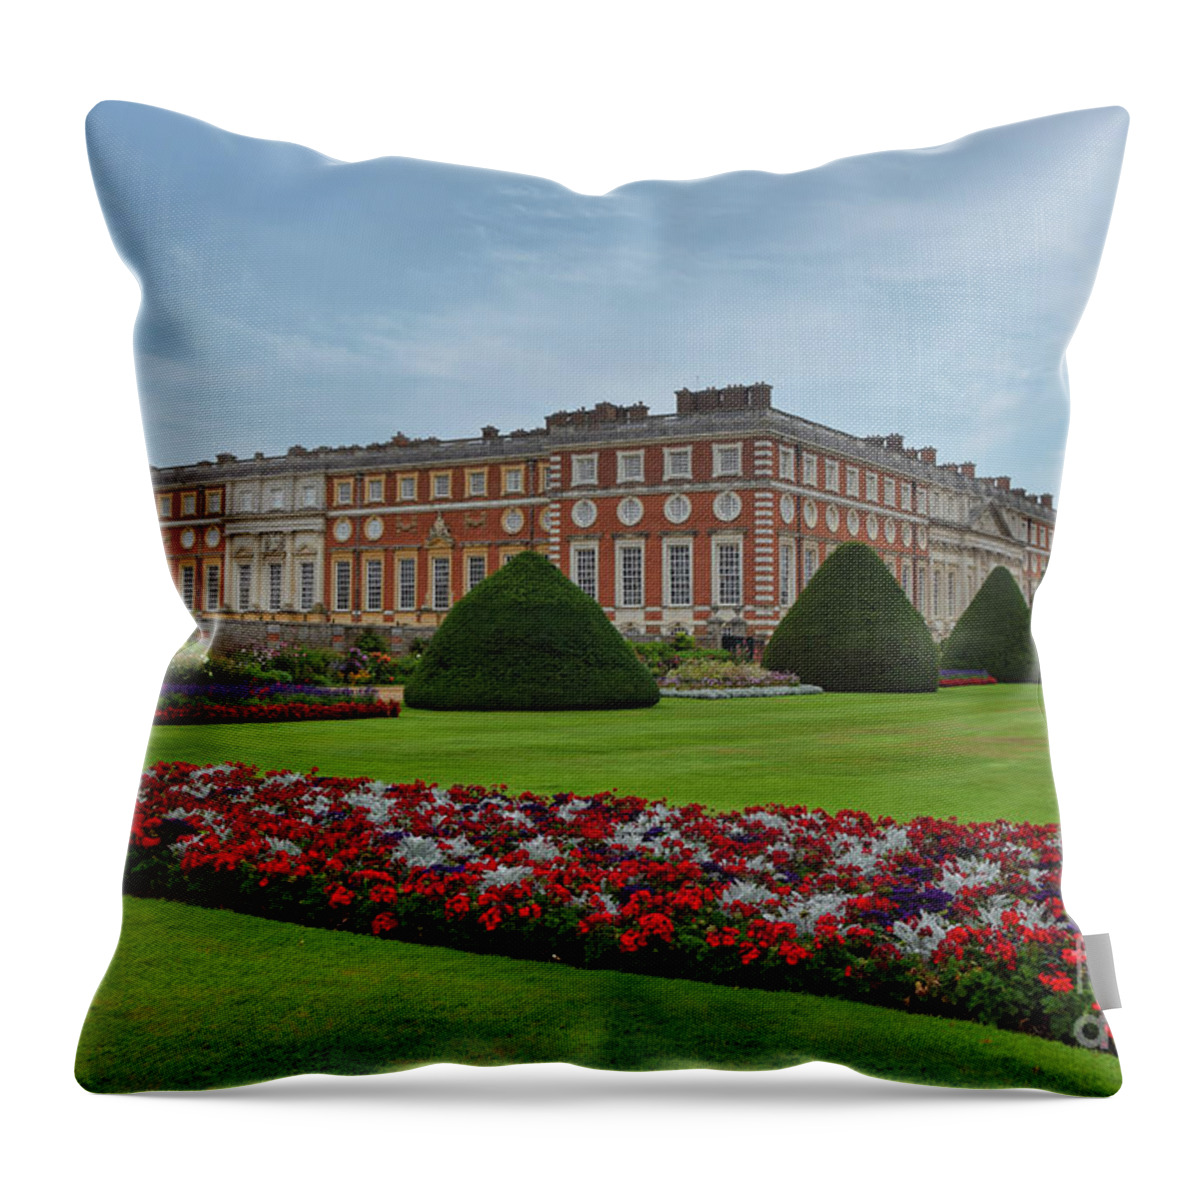 Hampton Court Palace Throw Pillow featuring the photograph Hampton Court Palace England by Abigail Diane Photography